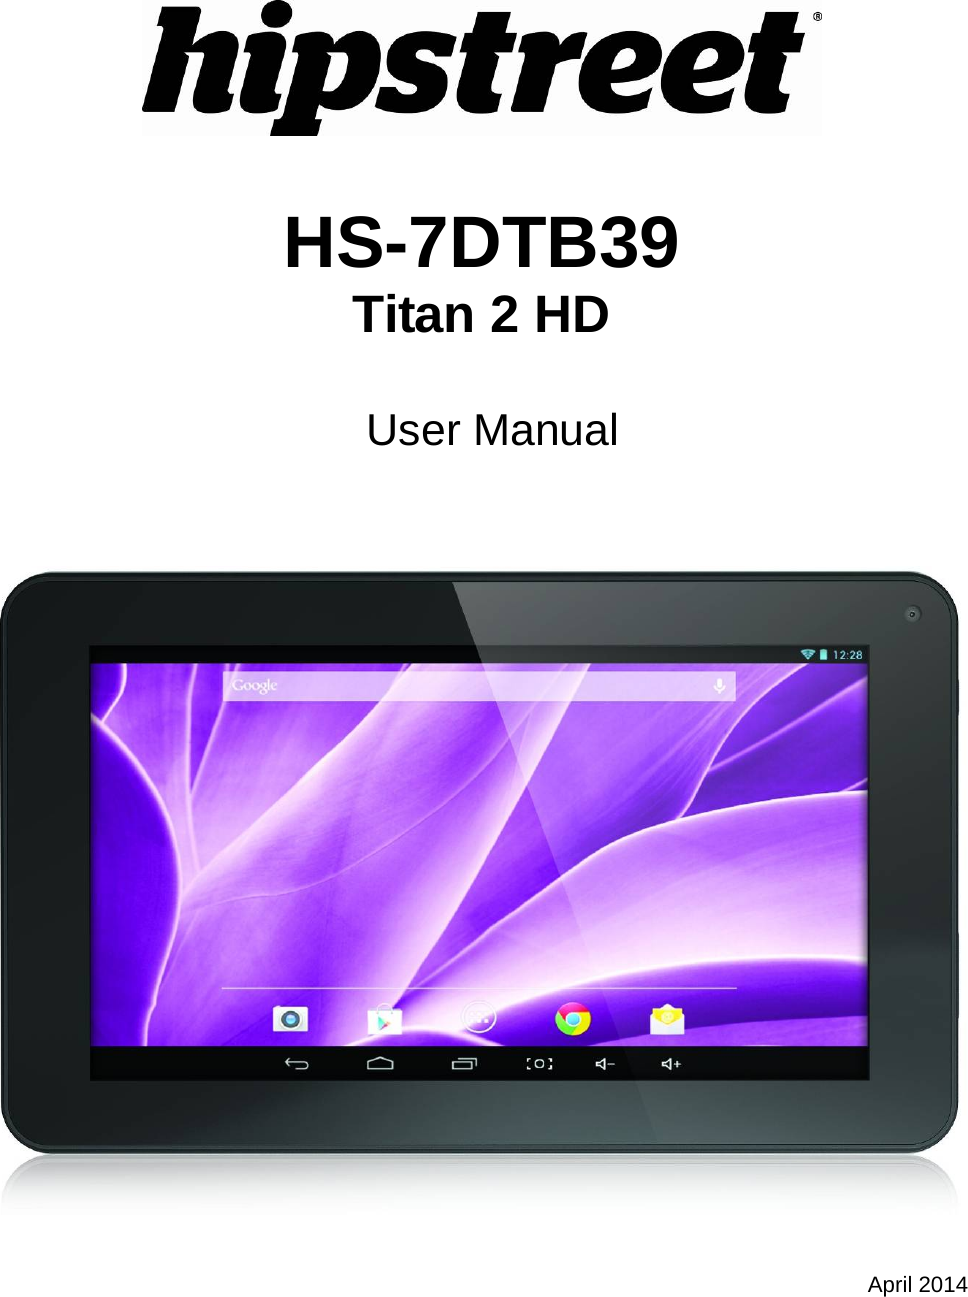    HS-7DTB39 Titan 2 HD   User Manual     April 2014  